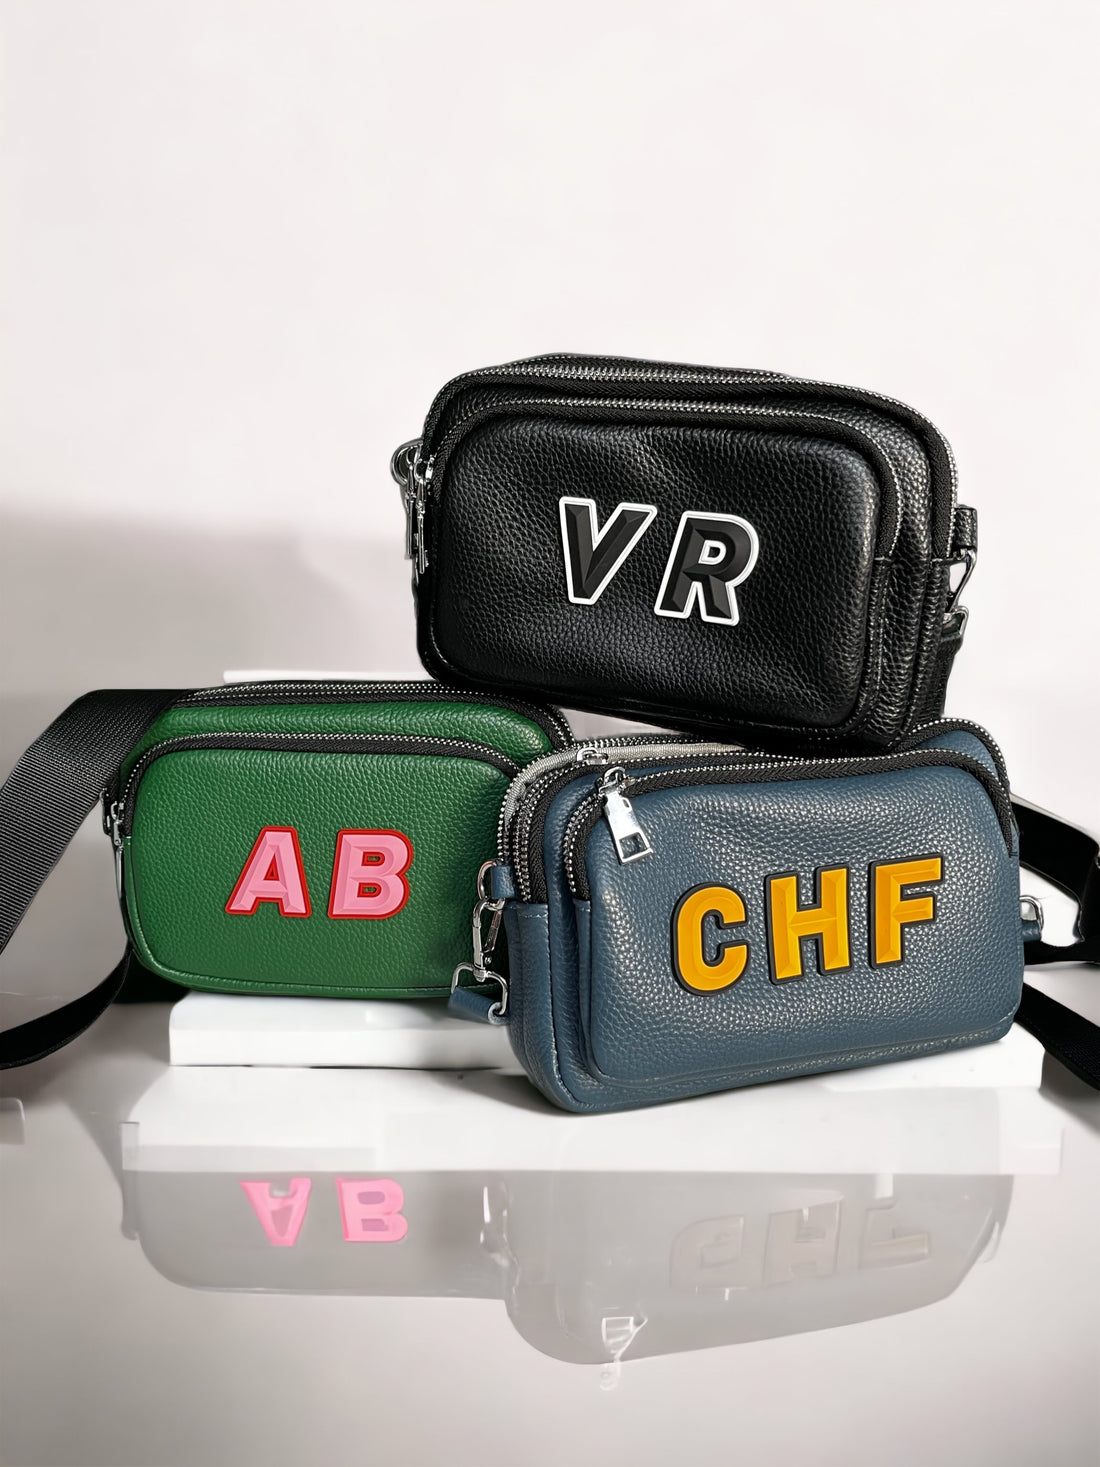 Personalised camera bags